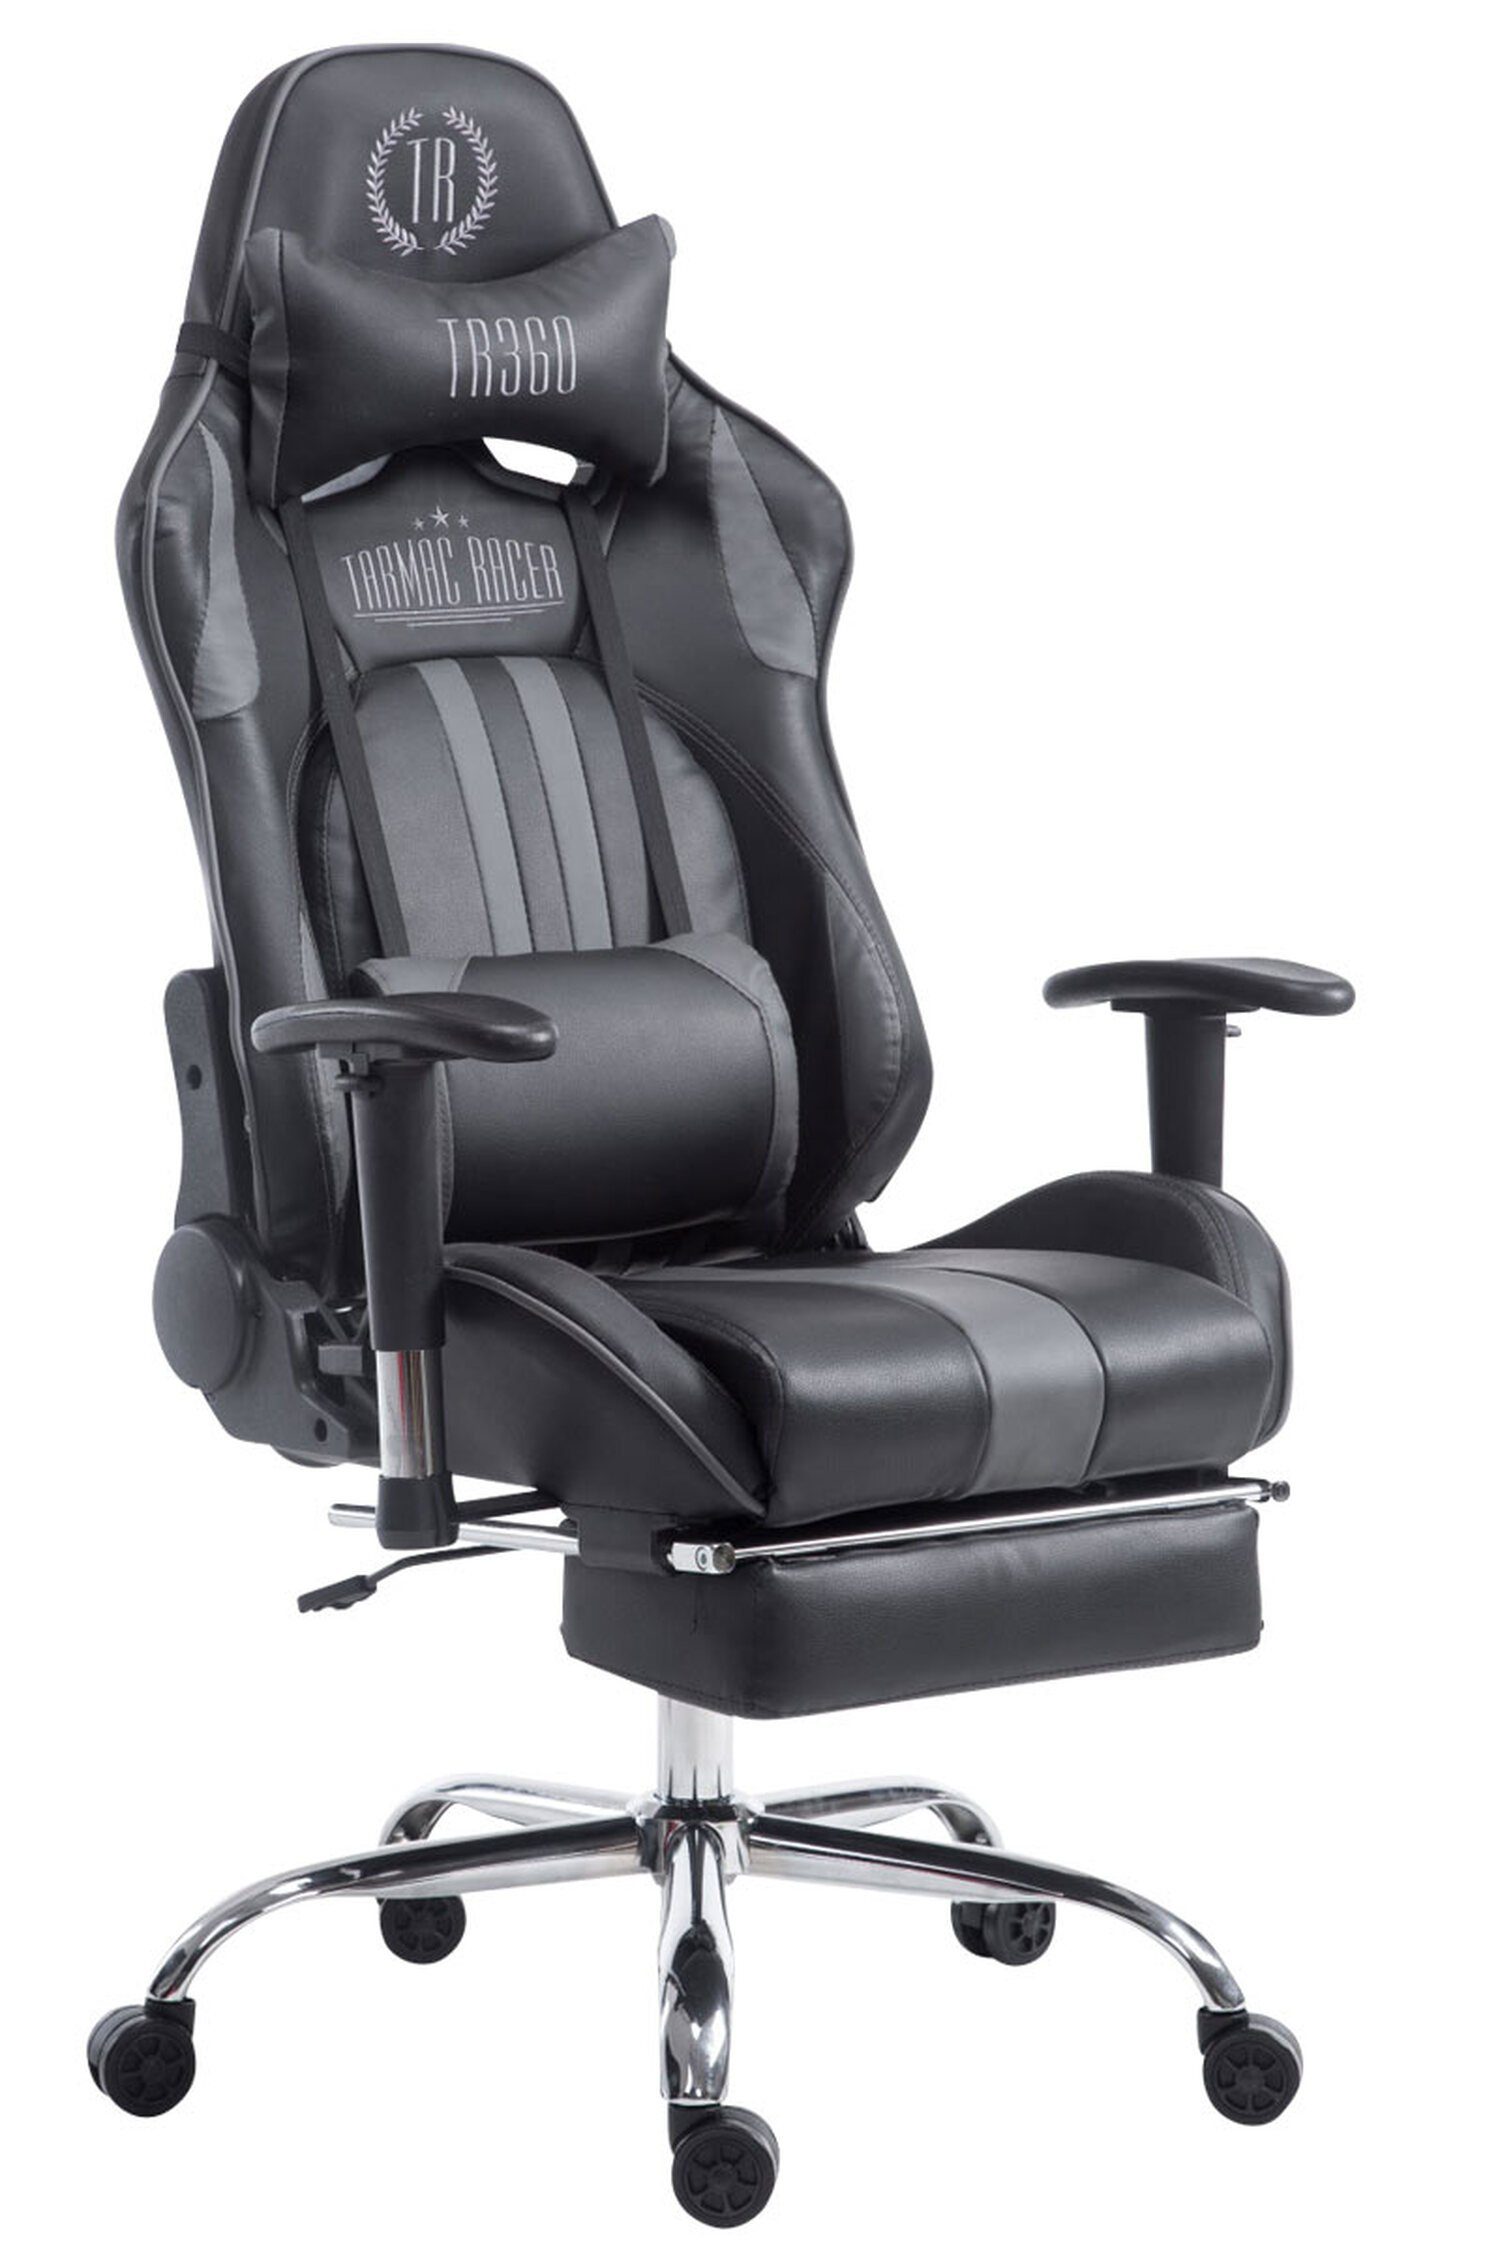 TPFLiving Gaming-Stuhl Limitless-2 mit bequemer Rückenlehne - höhenverstellbar - 360° drehbar (Schreibtischstuhl, Drehstuhl, Gamingstuhl, Racingstuhl, Chefsessel), Gestell: Metall chrom - Sitzfläche: Kunstleder schwarz/grau